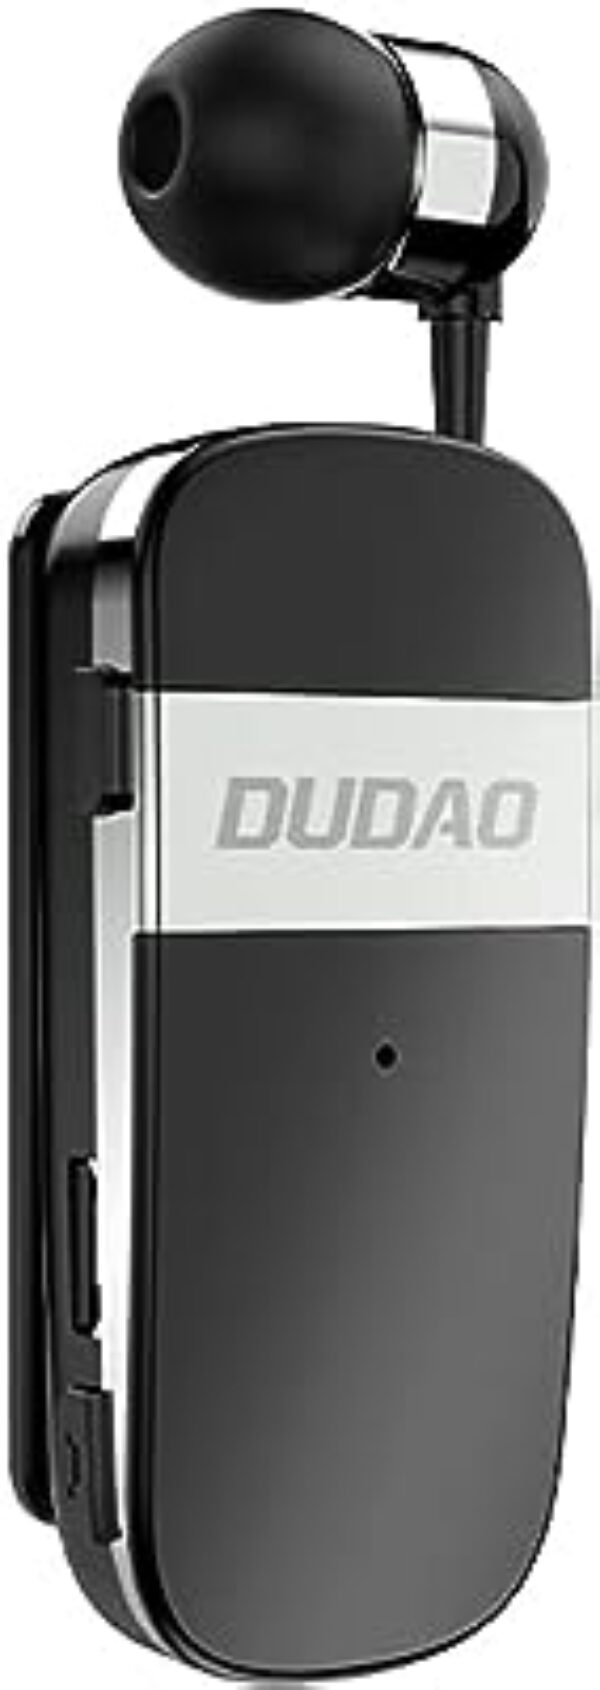 DUDAO GU9 Bluetooth Earpiece